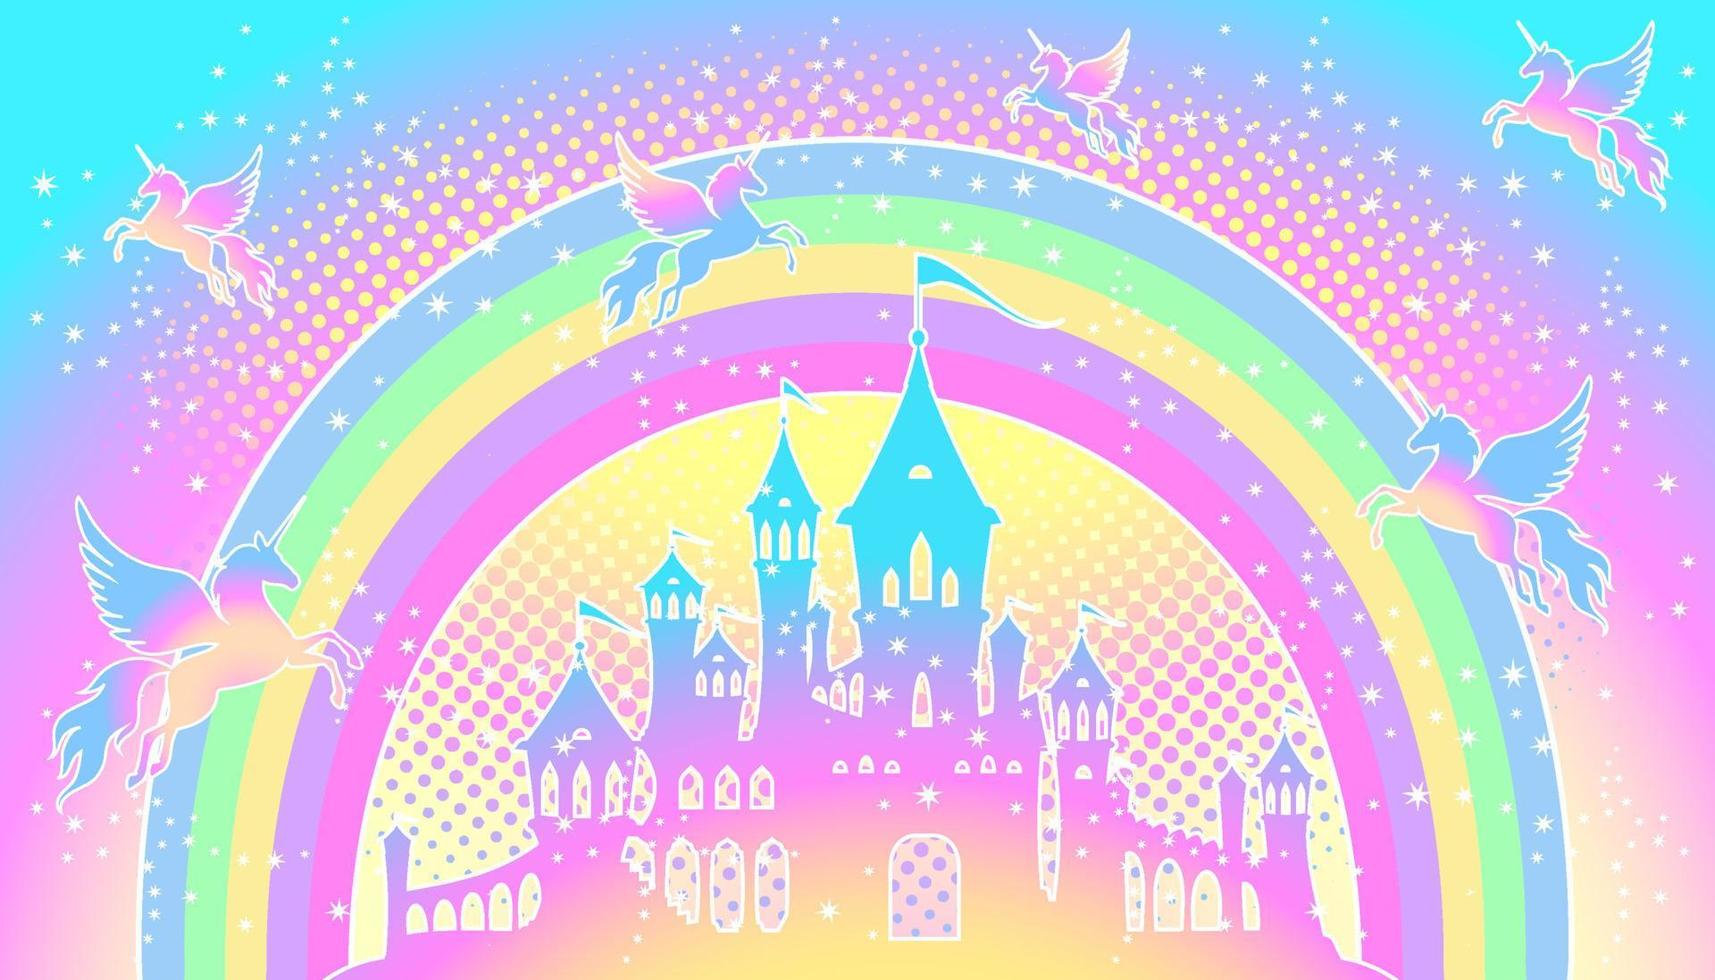 silueta de un castillo mágico sobre un fondo de unicornios arcoíris con estrellas. vector